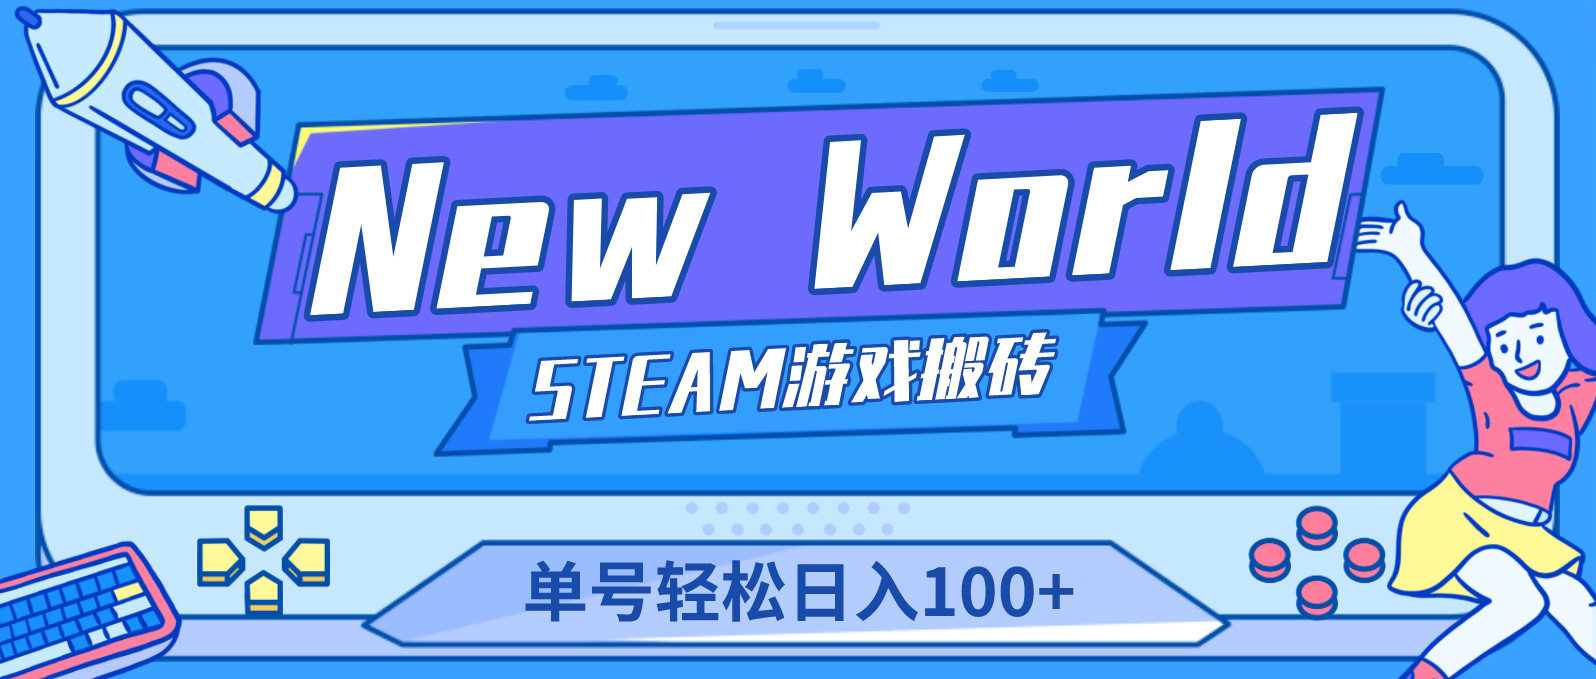 （2567期）【游戏搬砖】New World 新世界游戏搬砖项目，单号日入100+【详细操作教程】